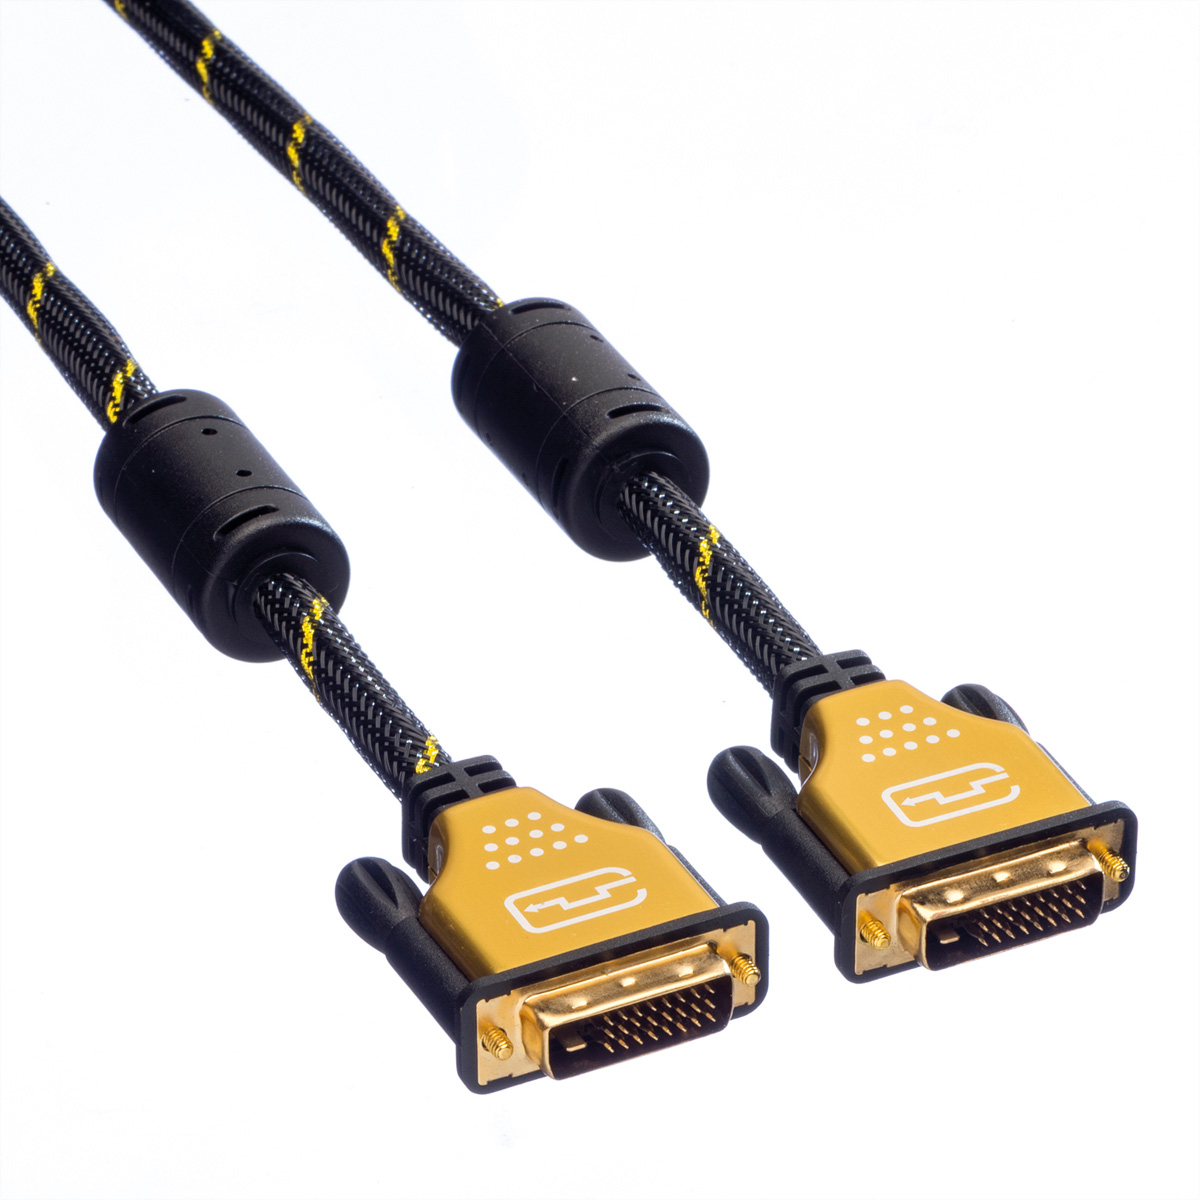 ROLINE GOLD Monitorkabel link, (dual dual 3 (24+1) m DVI, DVI-Kabel ST-ST, link)